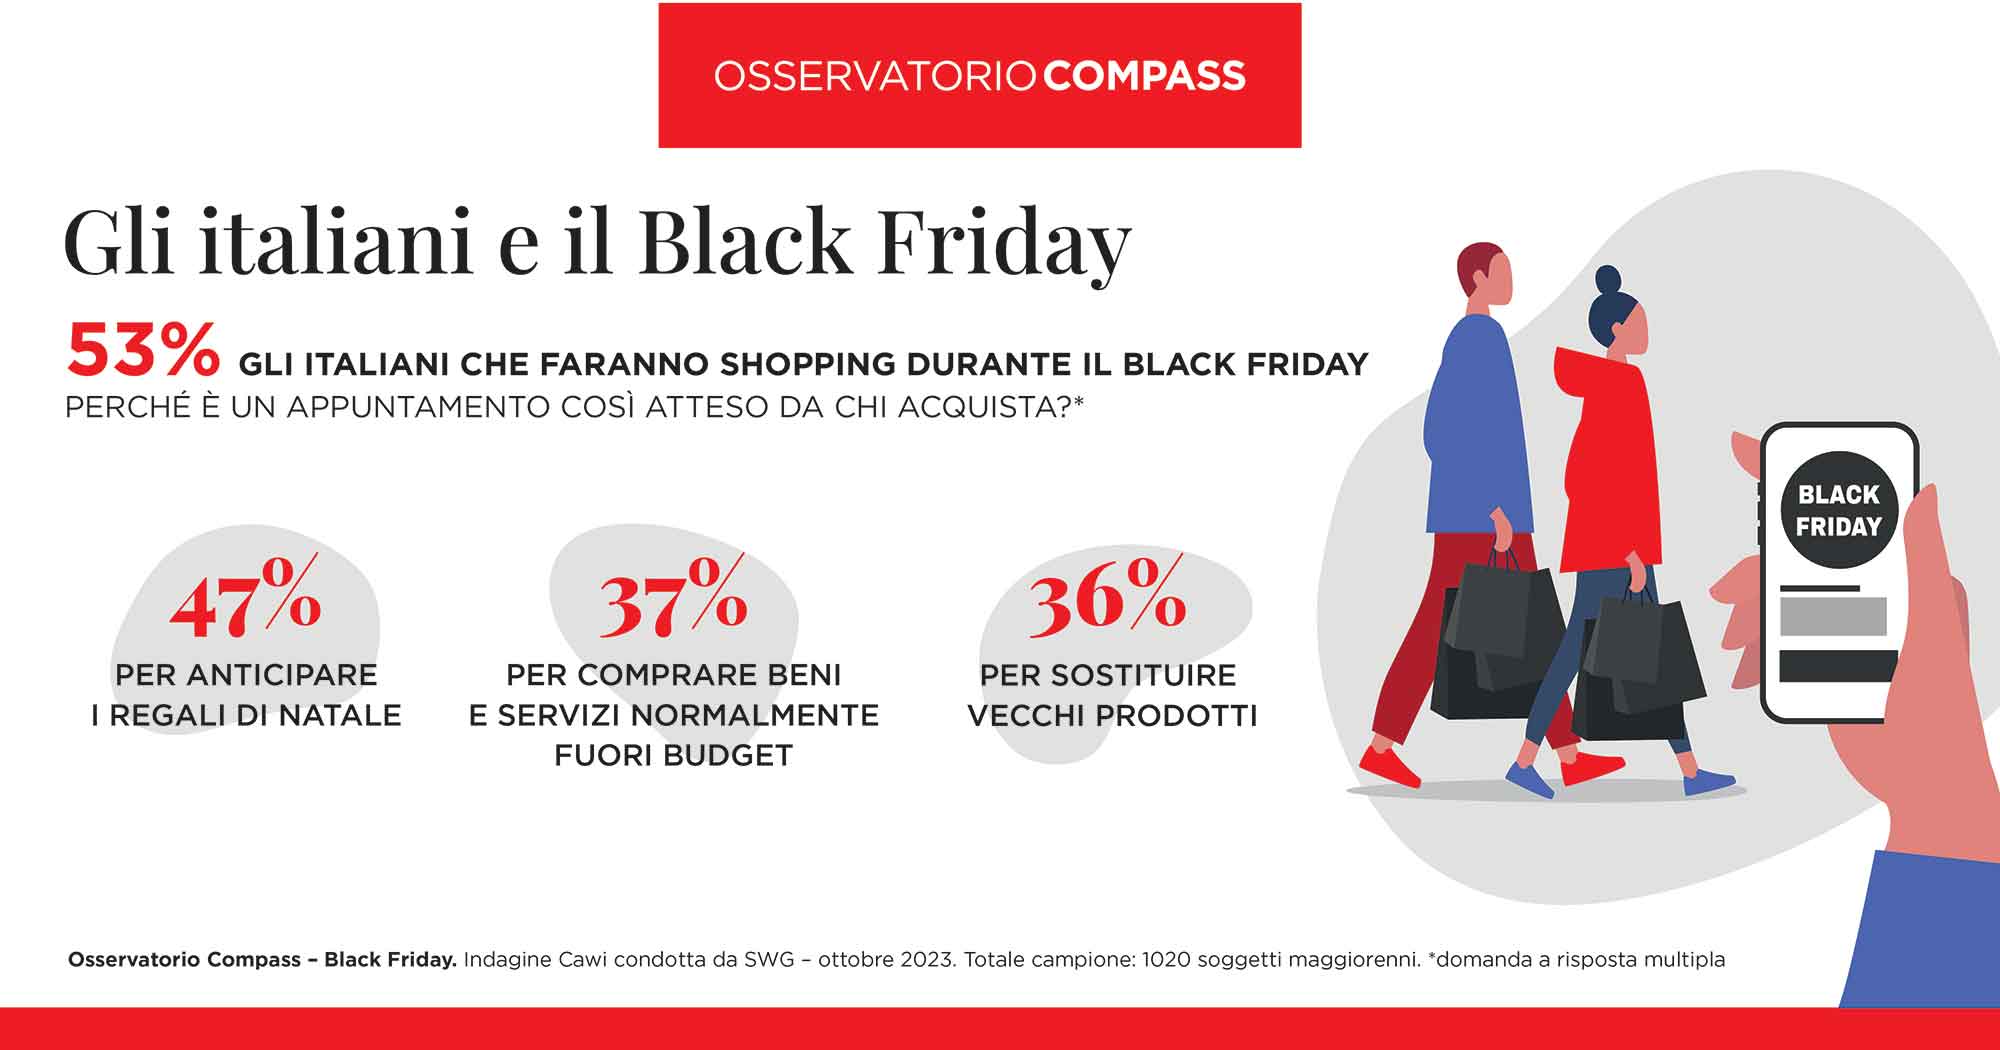 Con il Black Friday, 1 italiano su 2 anticipa le spese di Natale